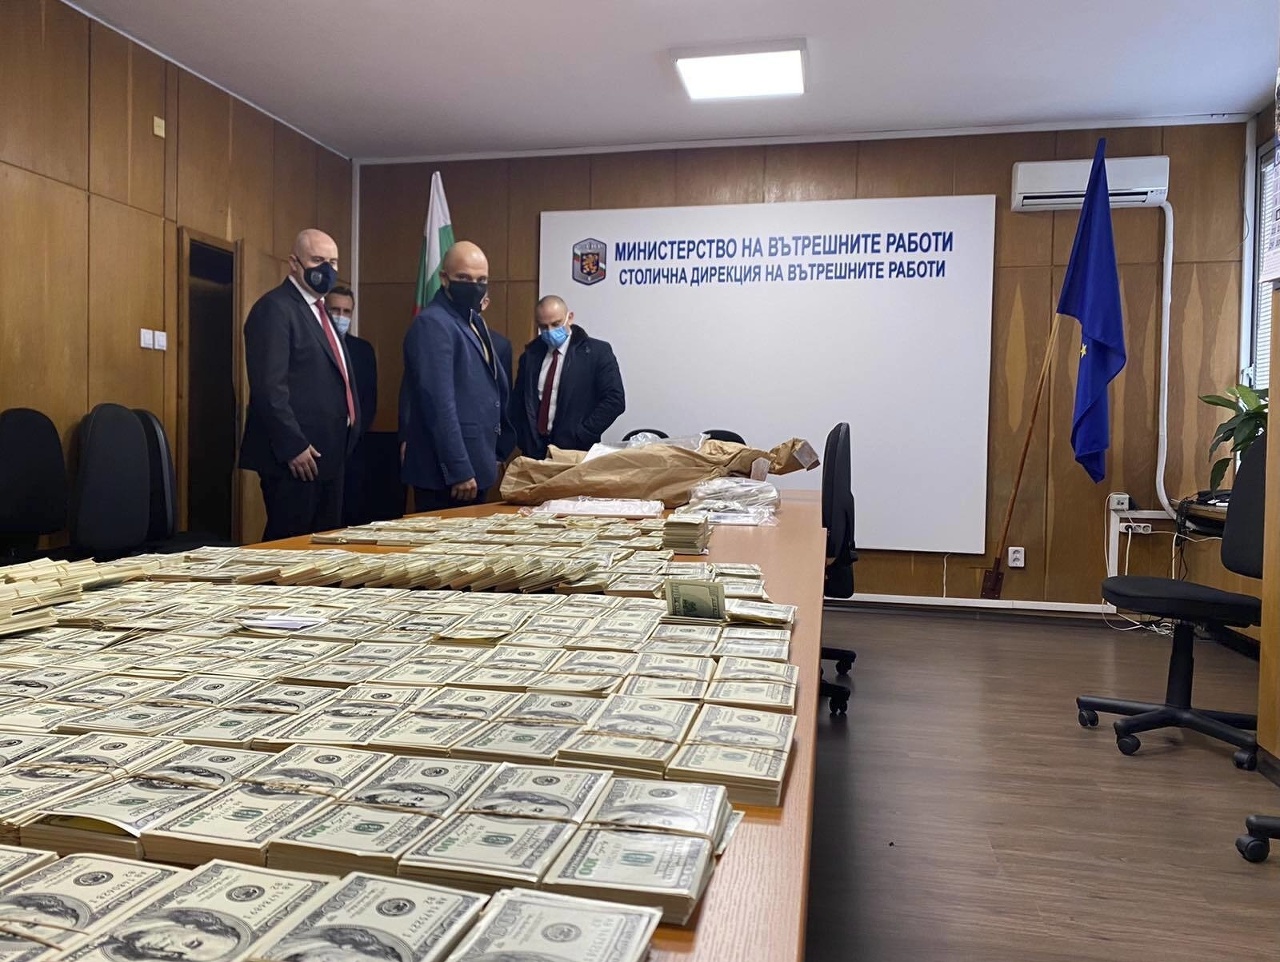 Na univerzite v Bulharsku objavili falošné bankovky